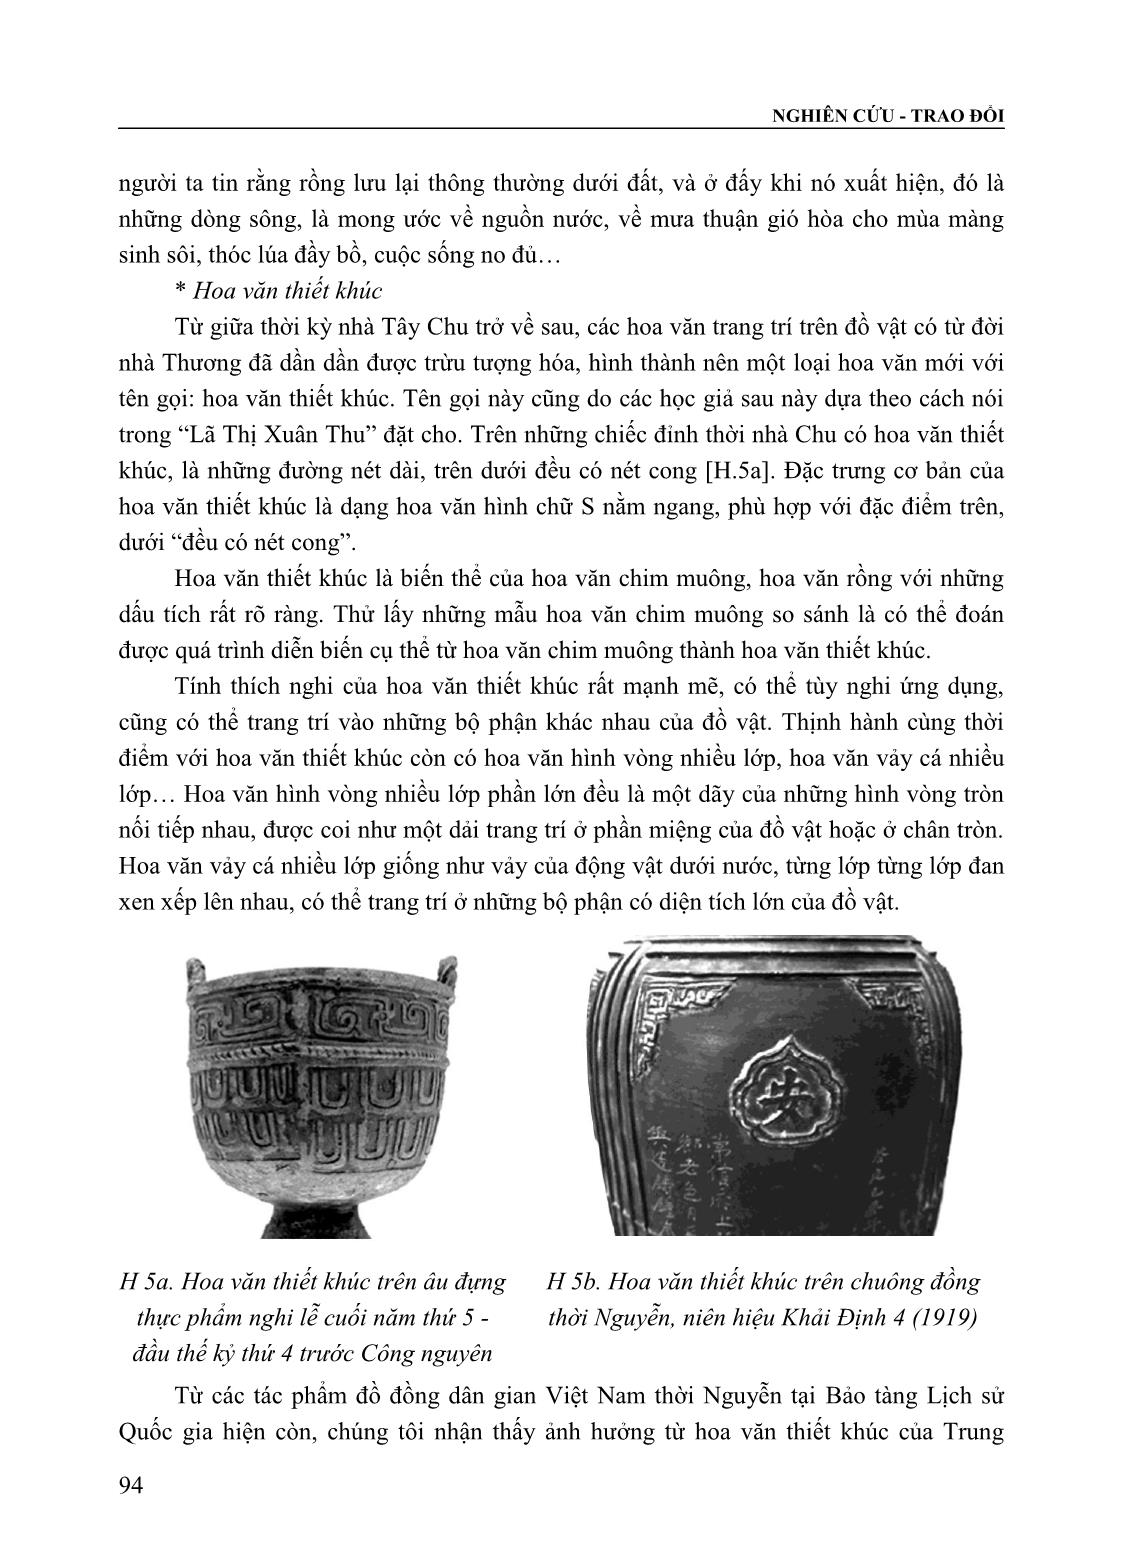 Tạo hình đồ đồng dân gian Việt Nam thời Nguyễn (Thế kỷ XIX - XX) trong bối cảnh giao lưu và tiếp biến với đồ đồng Trung Quốc trang 5